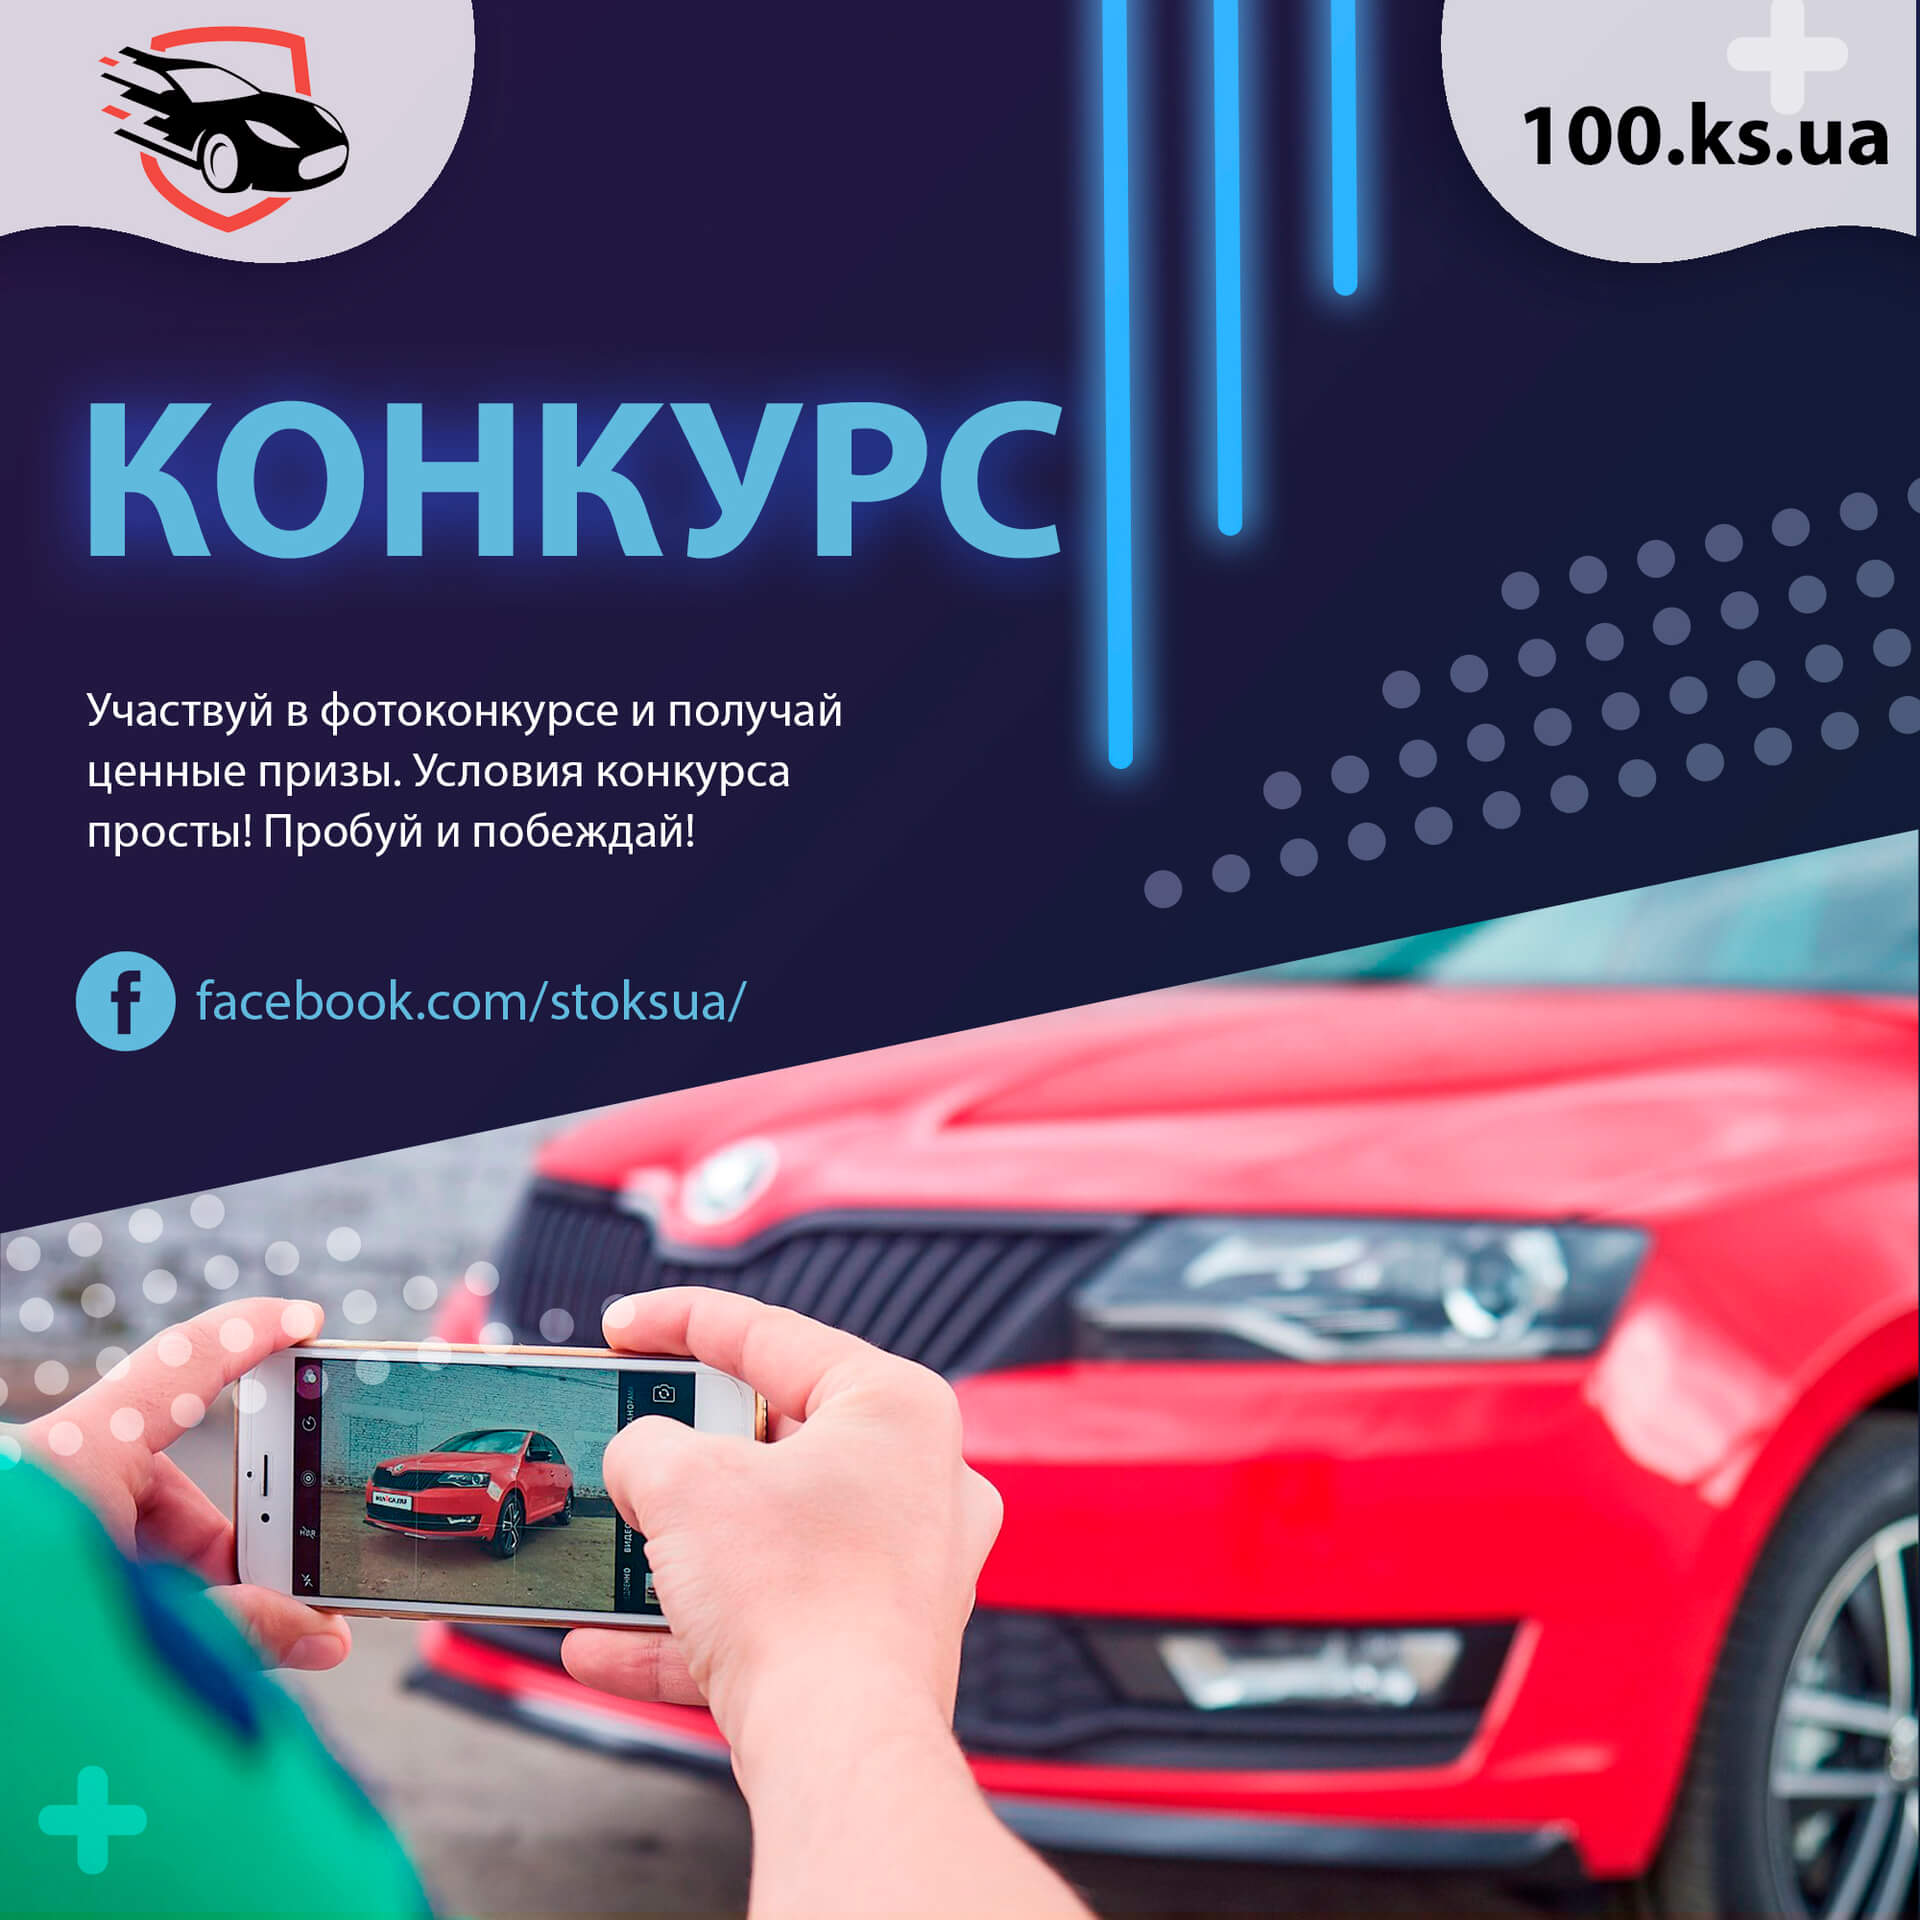 конкурсы на автотематику, конкурсы для автомобилей, конкурсы на авто тематику, конкурсы про автомобили, конкурсы с автомобильной тематикой, конкурсы с автомобилями, что значит фотоконкурс, фотоконкурс 2020, фотоконкурсы в украине